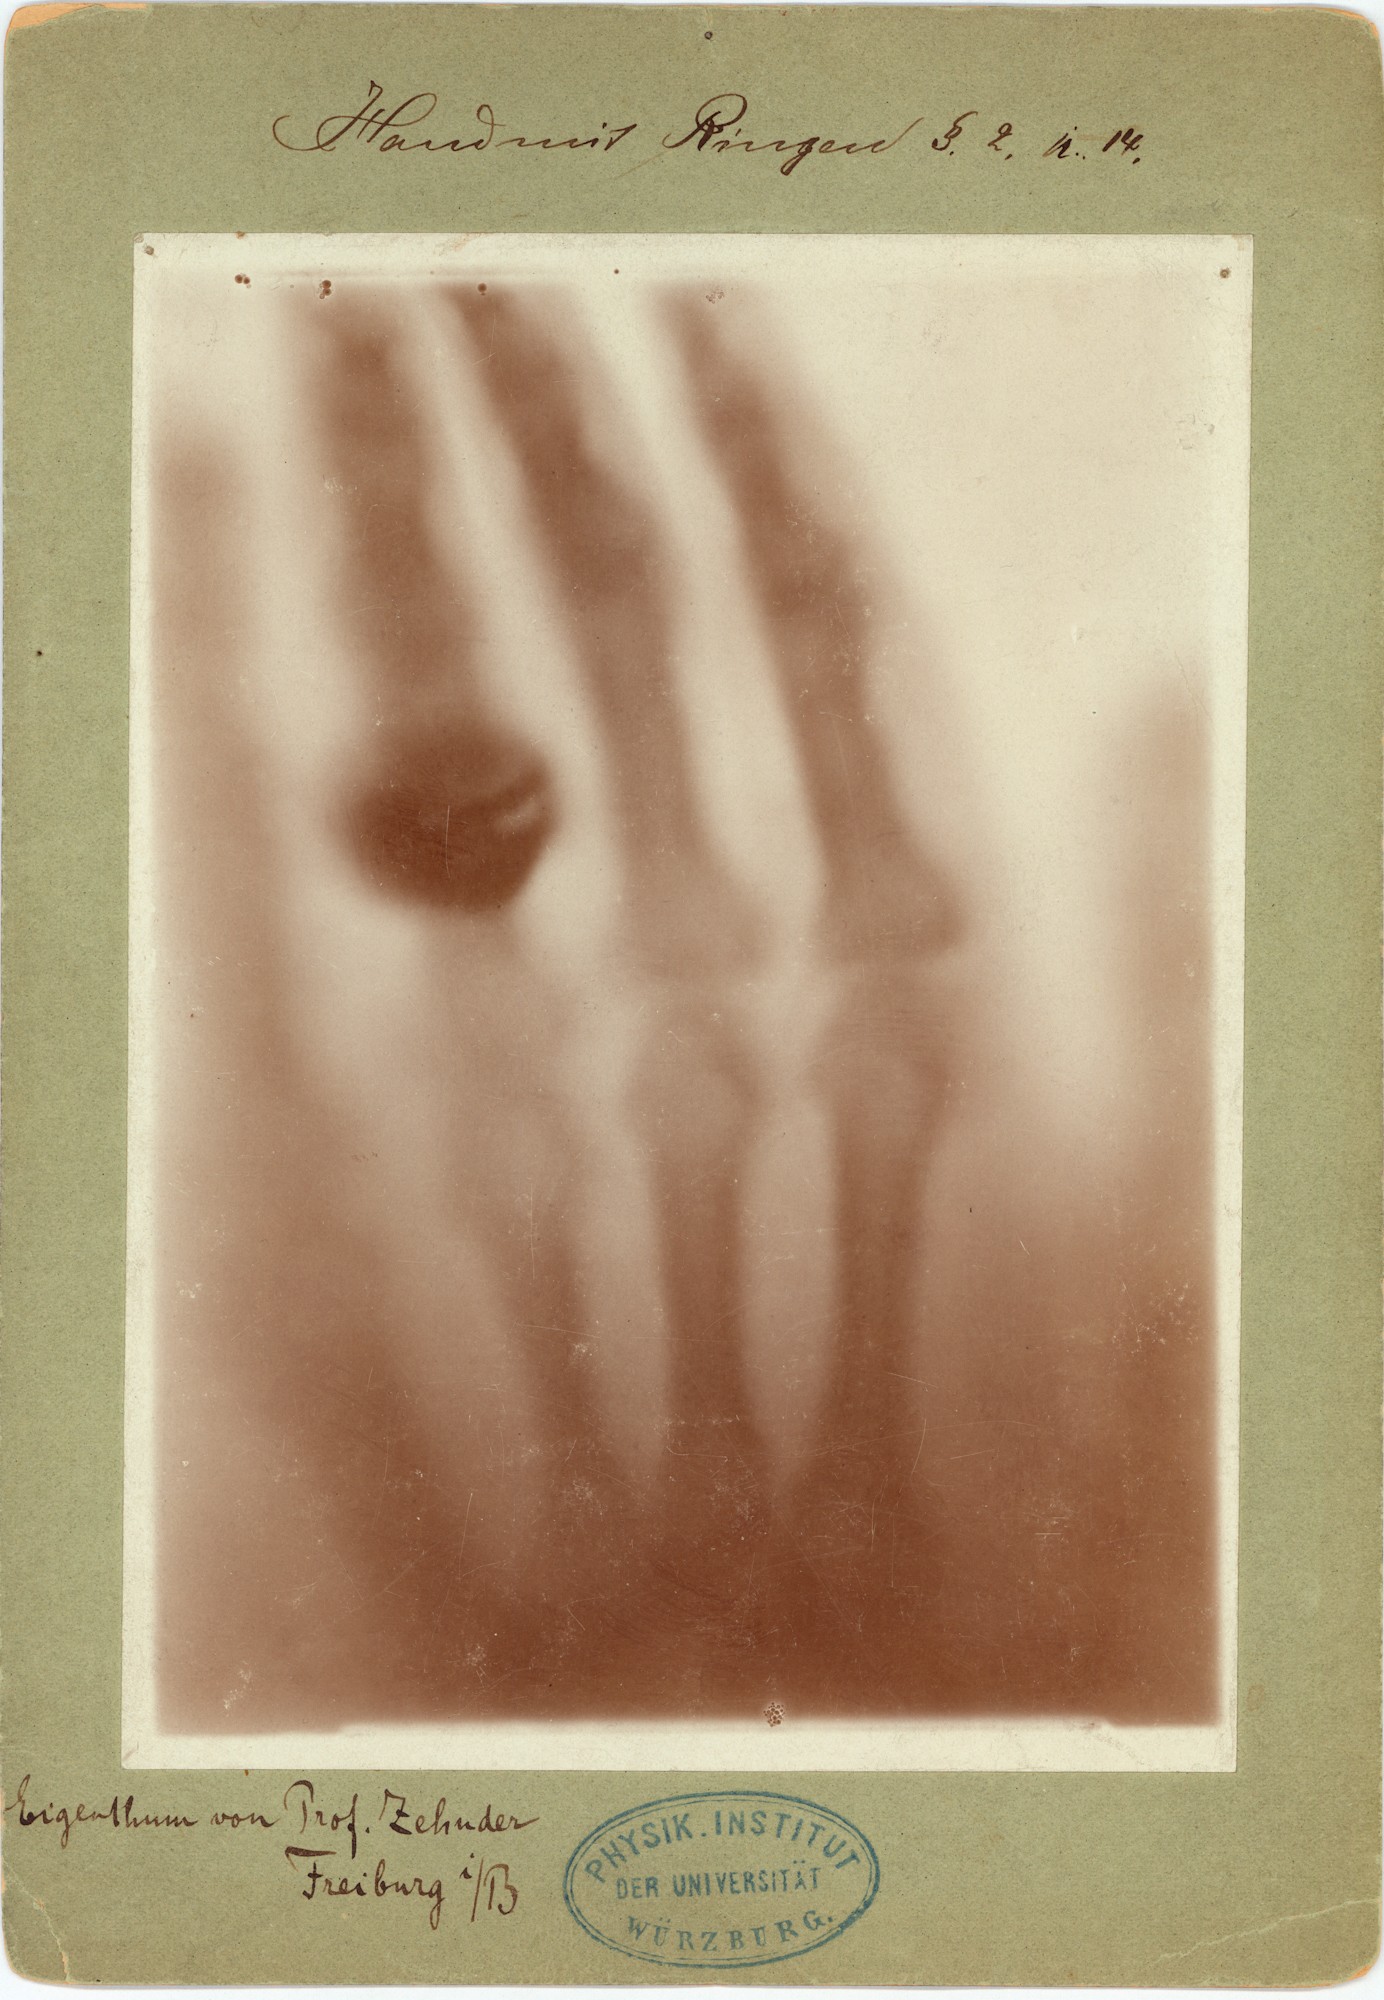 Versuch: Durchleuchtung einer menschlichen Hand (22.12.1895), 89008 p (Deutsches Röntgen-Museum CC BY-NC-SA)